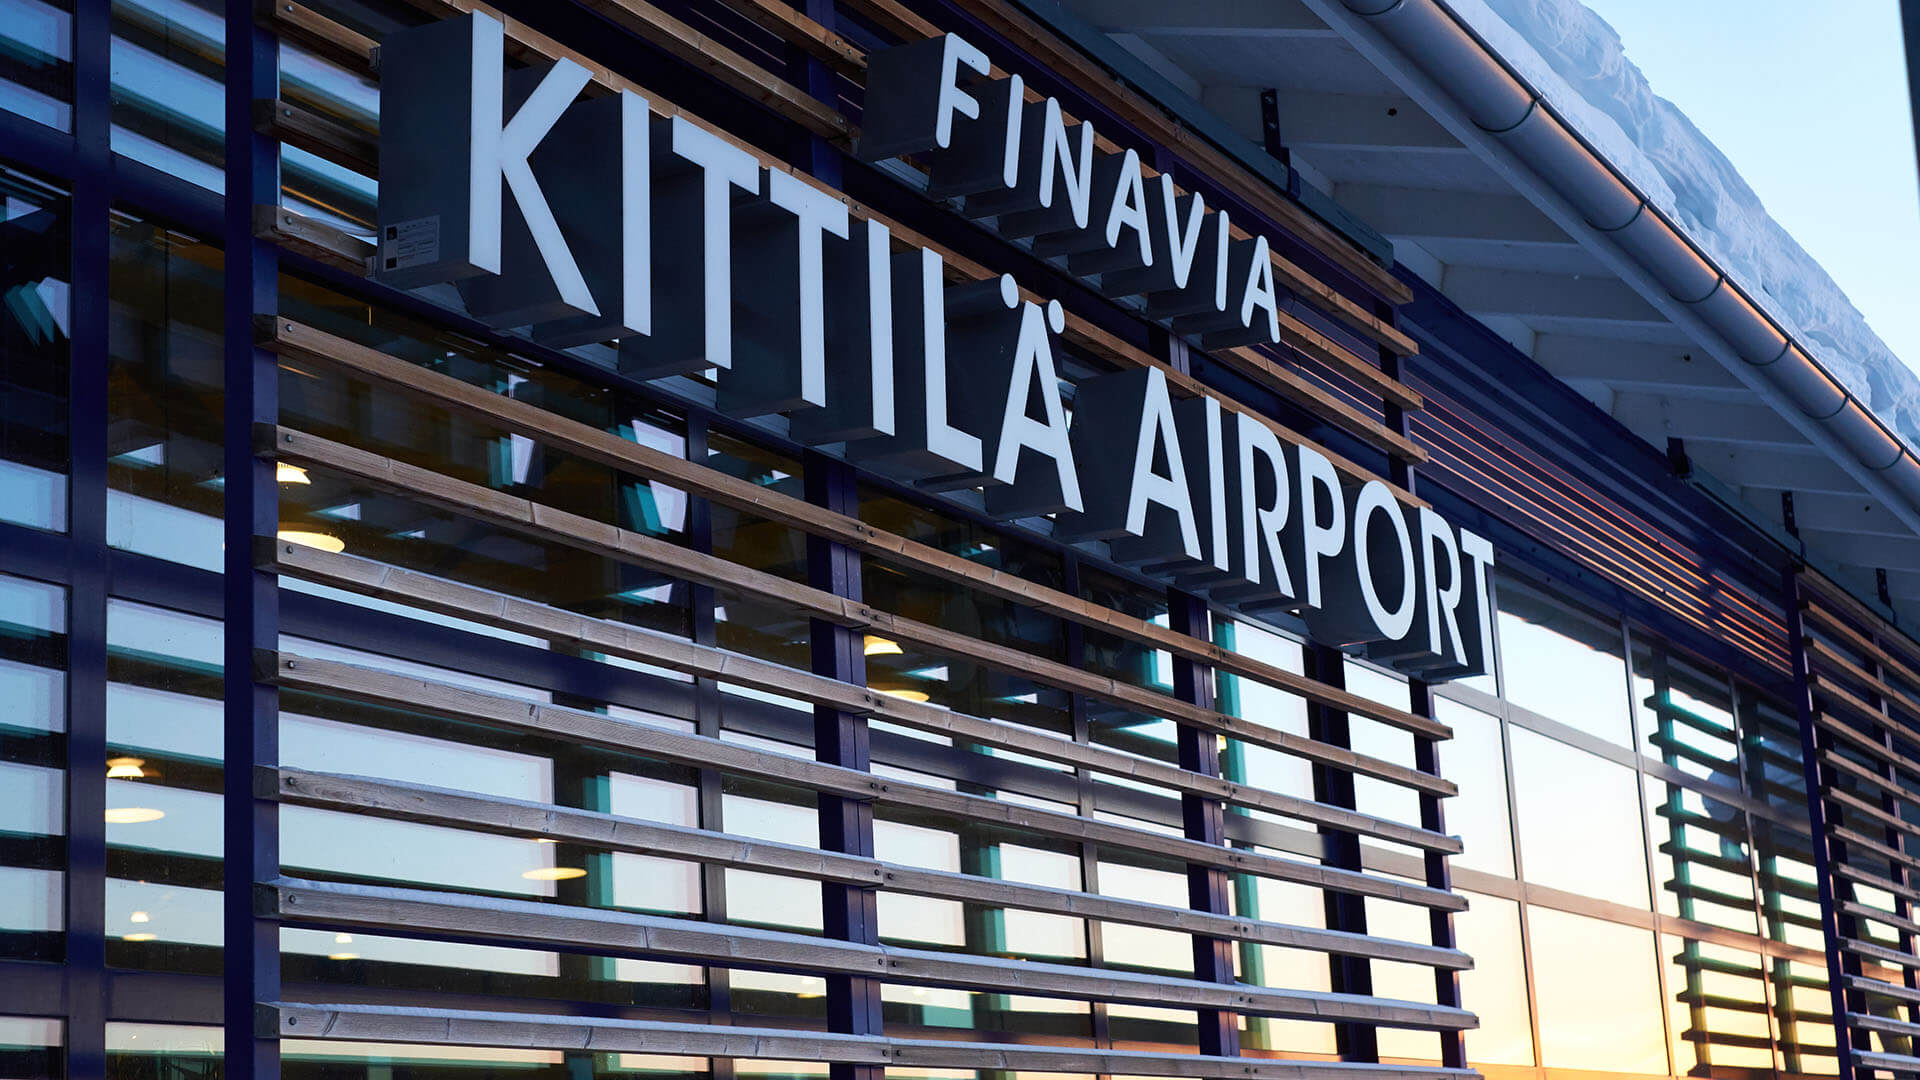  Kittilän lentoasema, terminaalilaajennus, uusi asemataso ja rullaustien suunnittelu on A-Insinöörien käsialaa.